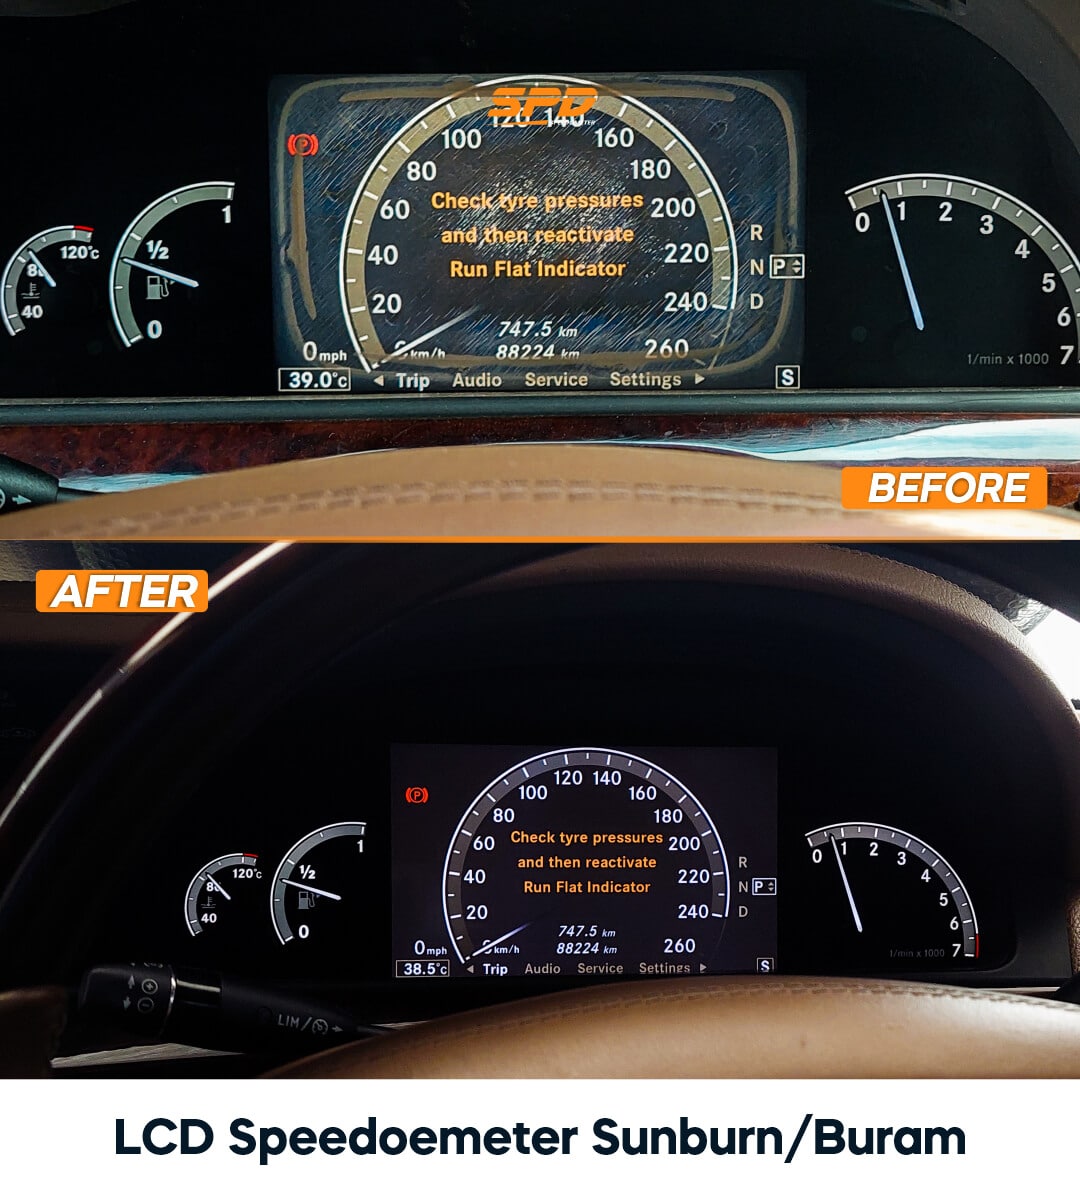 LCD Speedometer Sunburn